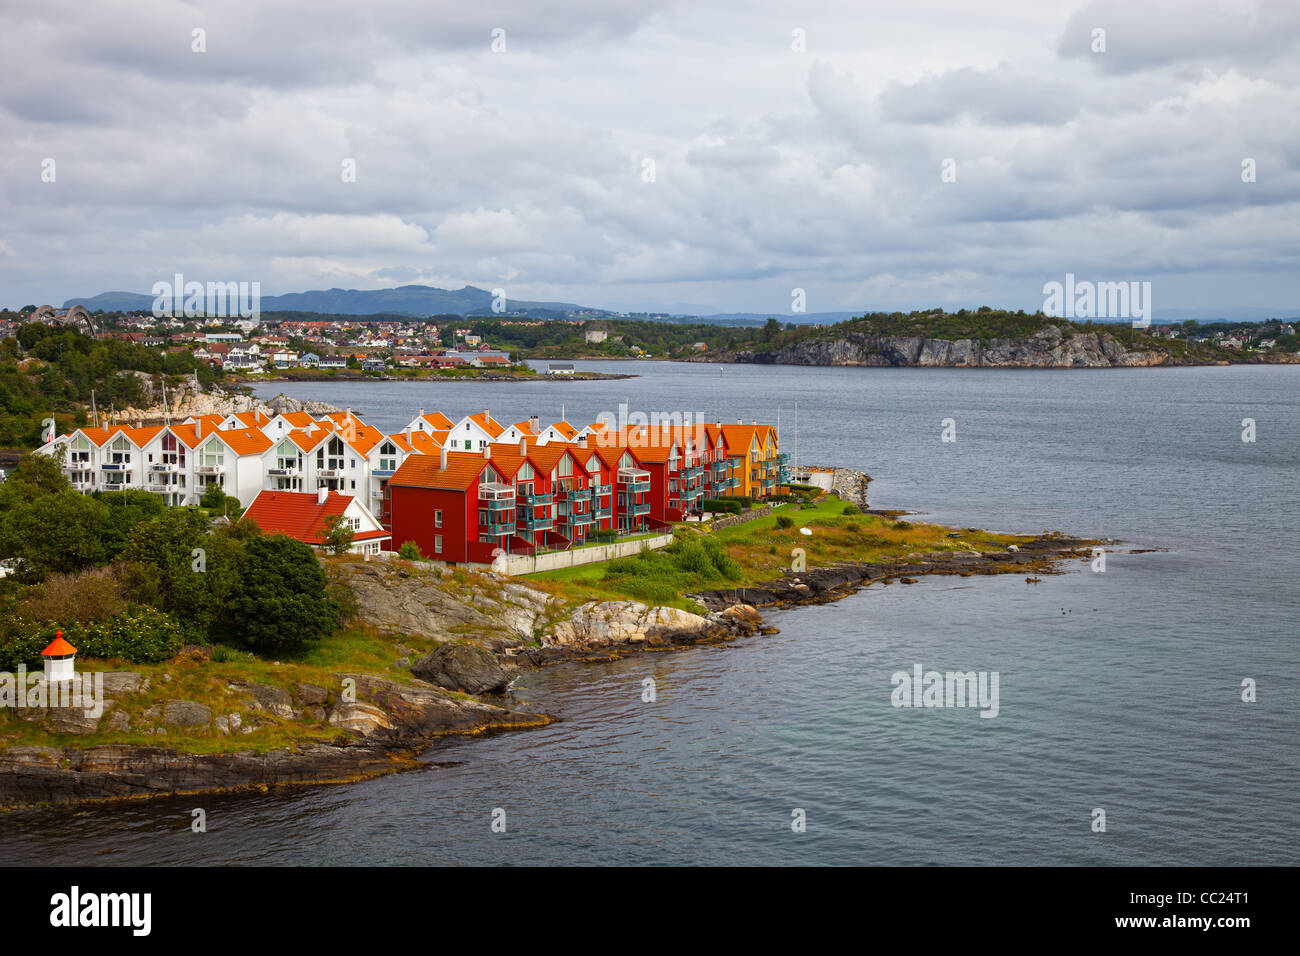 L'architecture typique de la côte norvégienne. Stavanger, Norvège. Banque D'Images